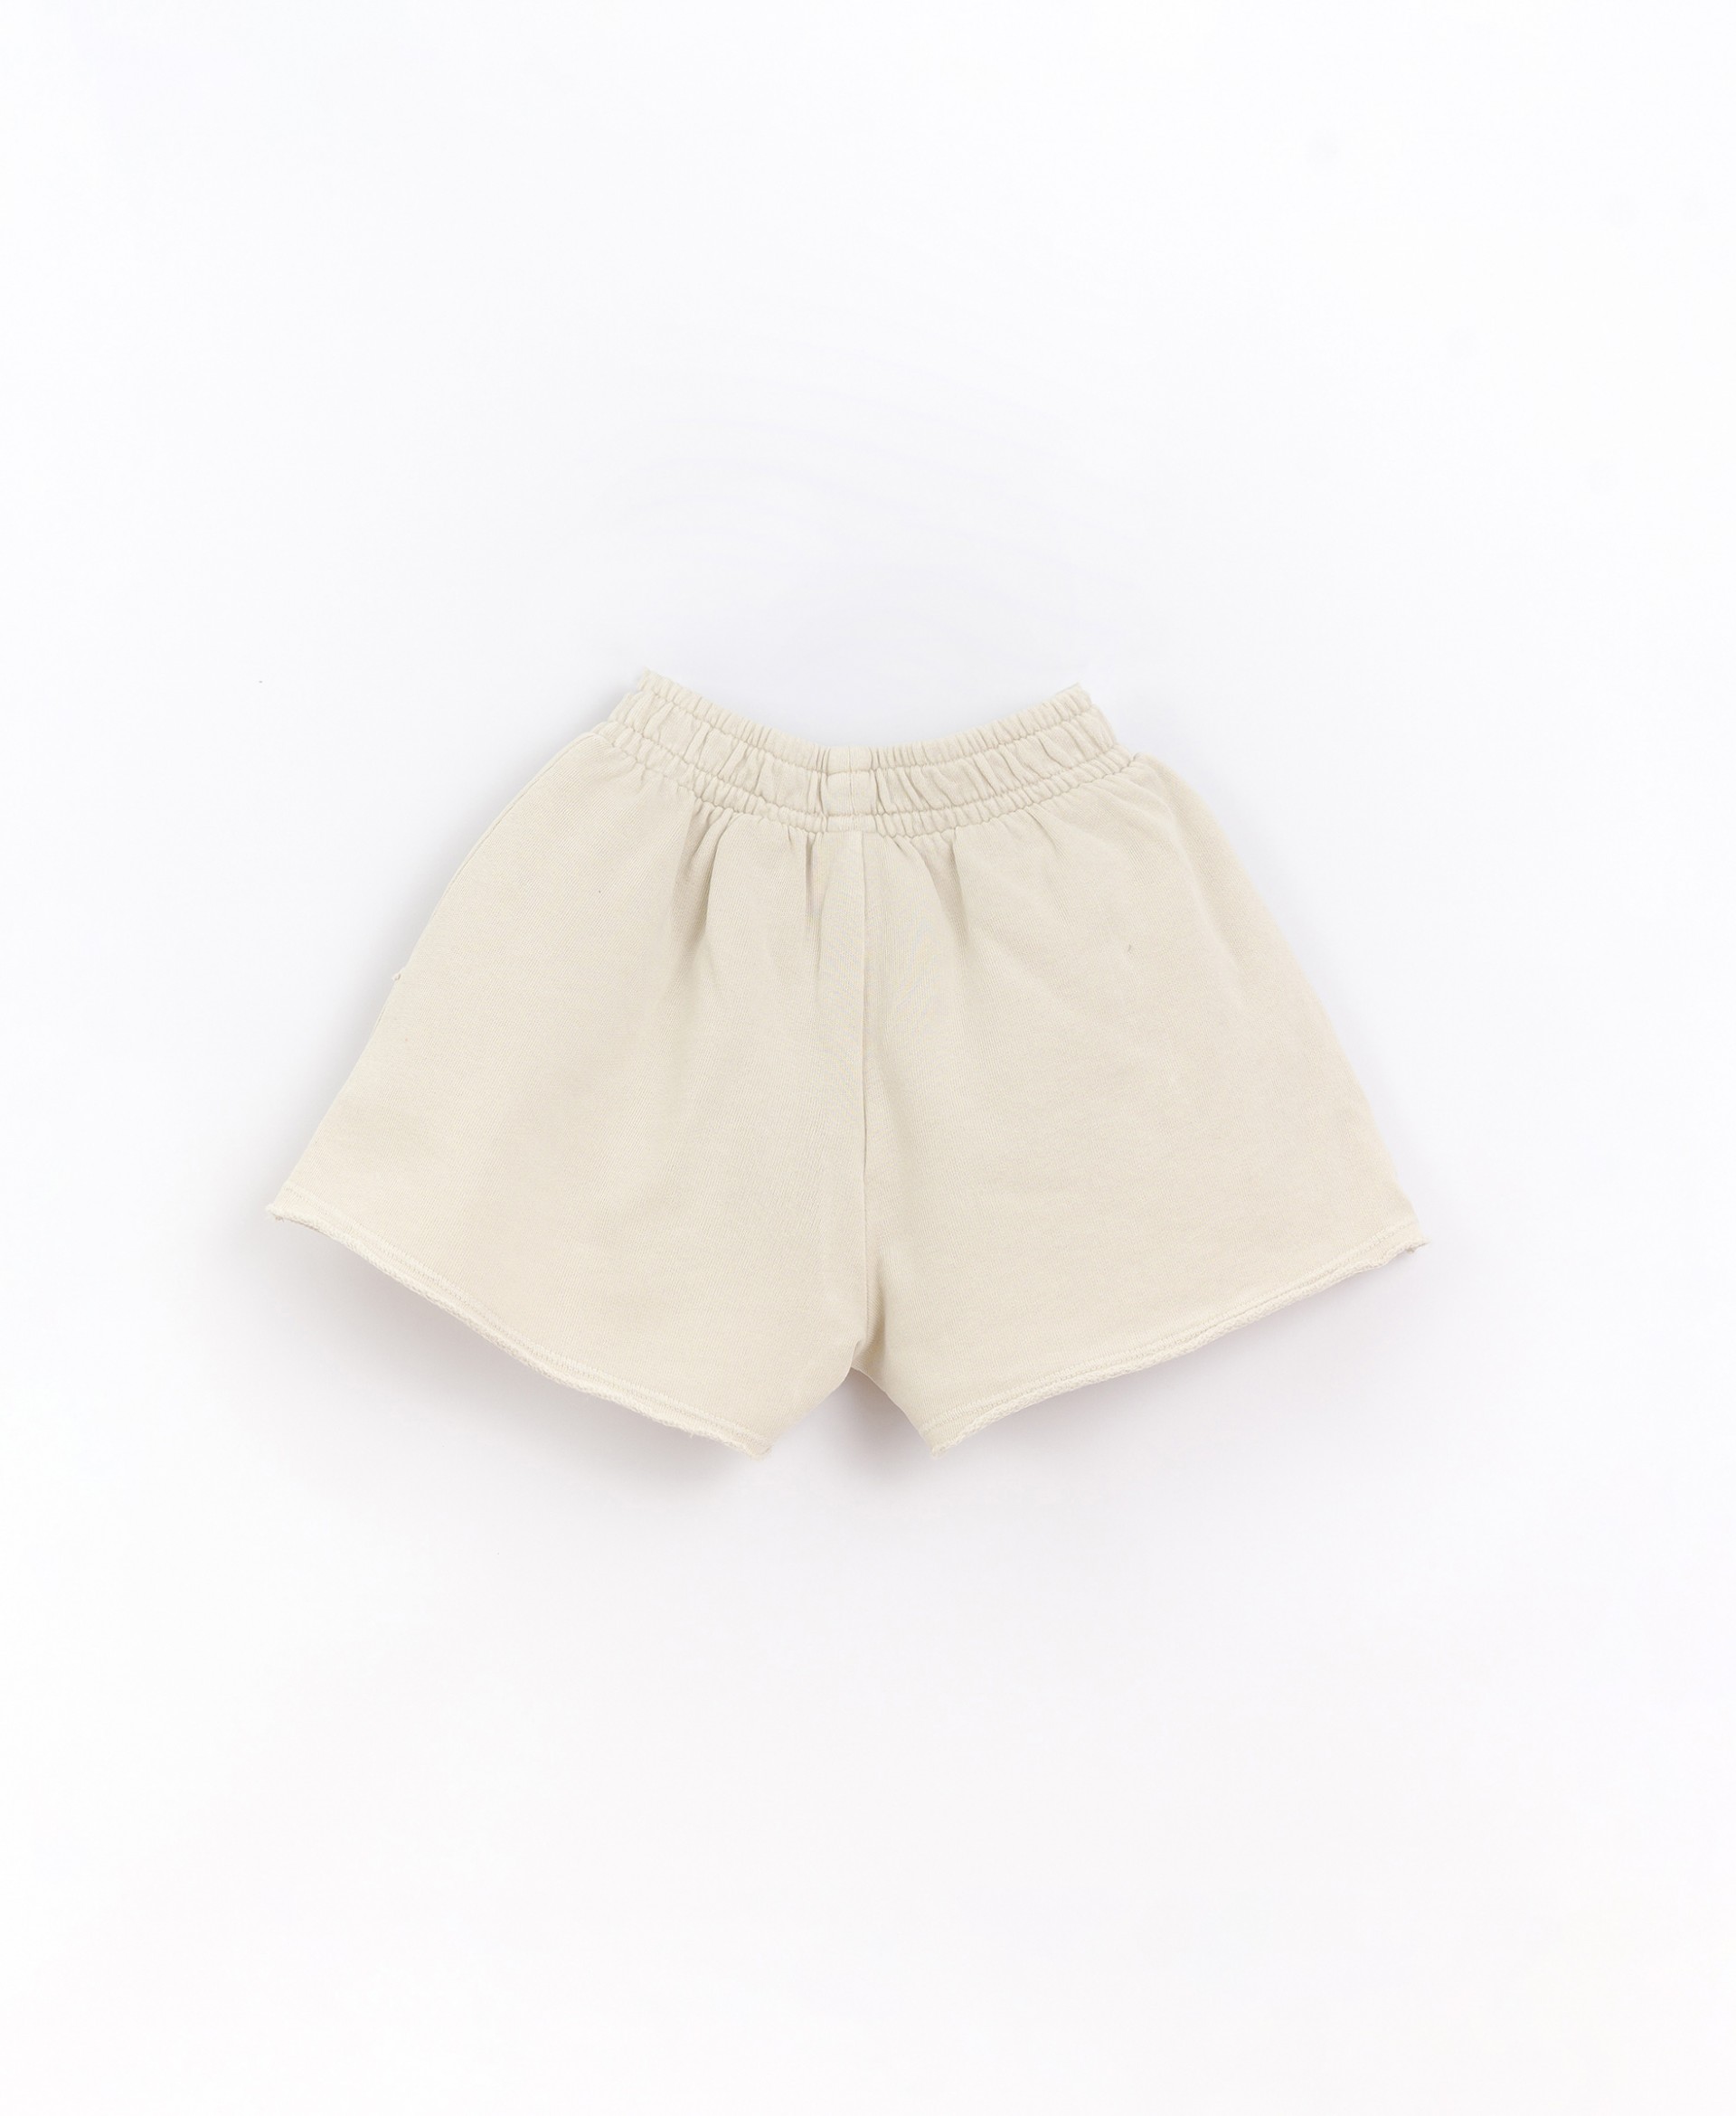 Pantalones cortos con bolsillos | Basketry